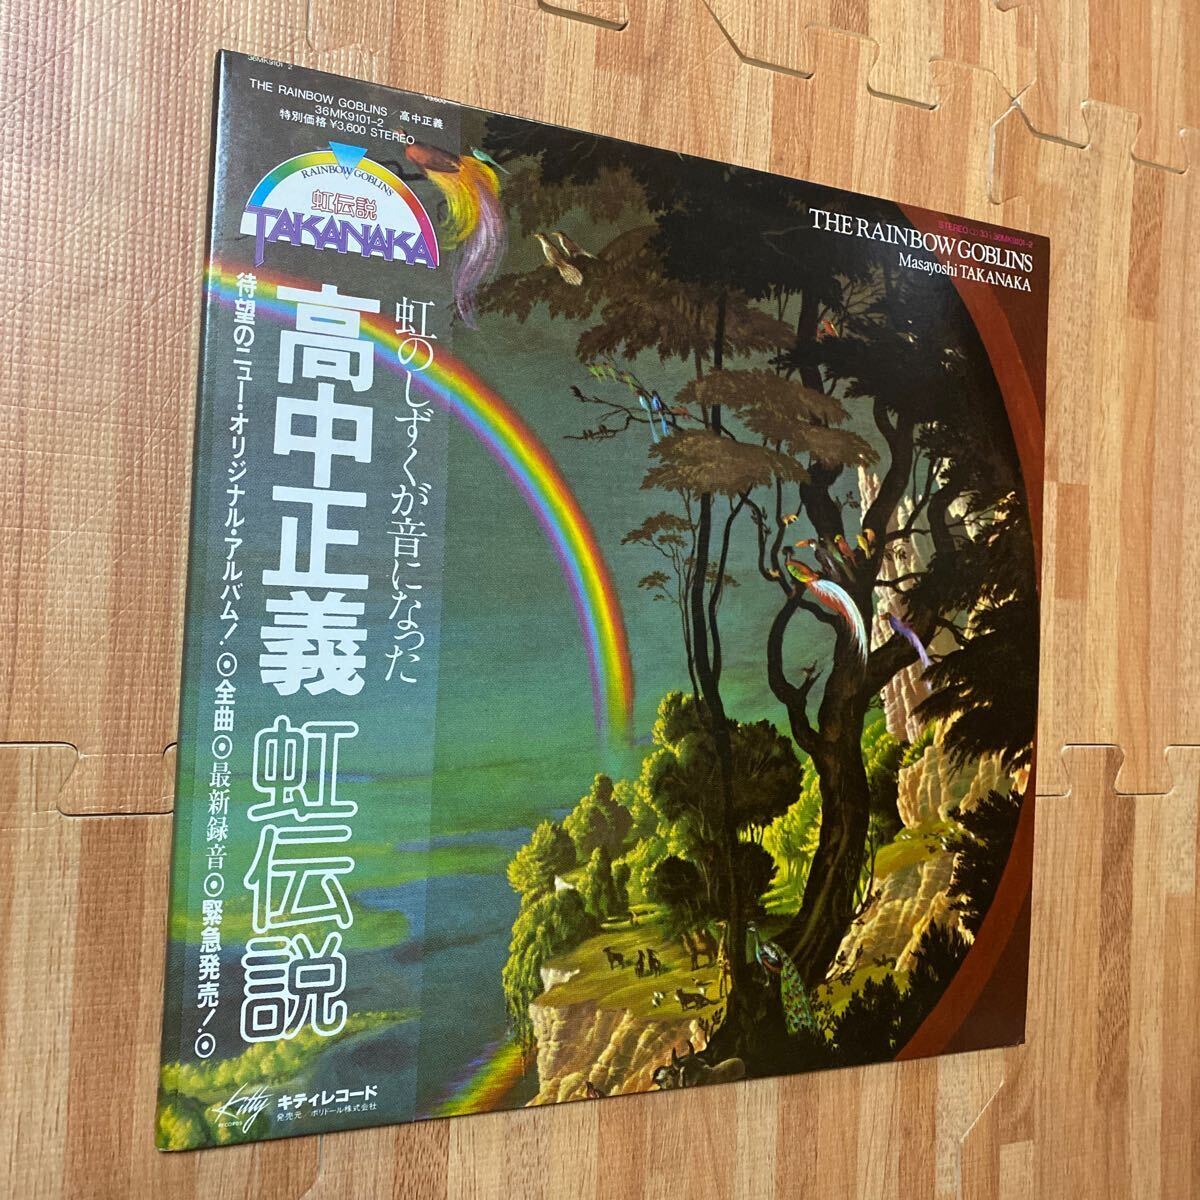 高中正義 Masayoshi Takanaka 虹伝説 The Rainbow Goblins 36MK9101~2 レコード LP 帯付き OBI_画像2